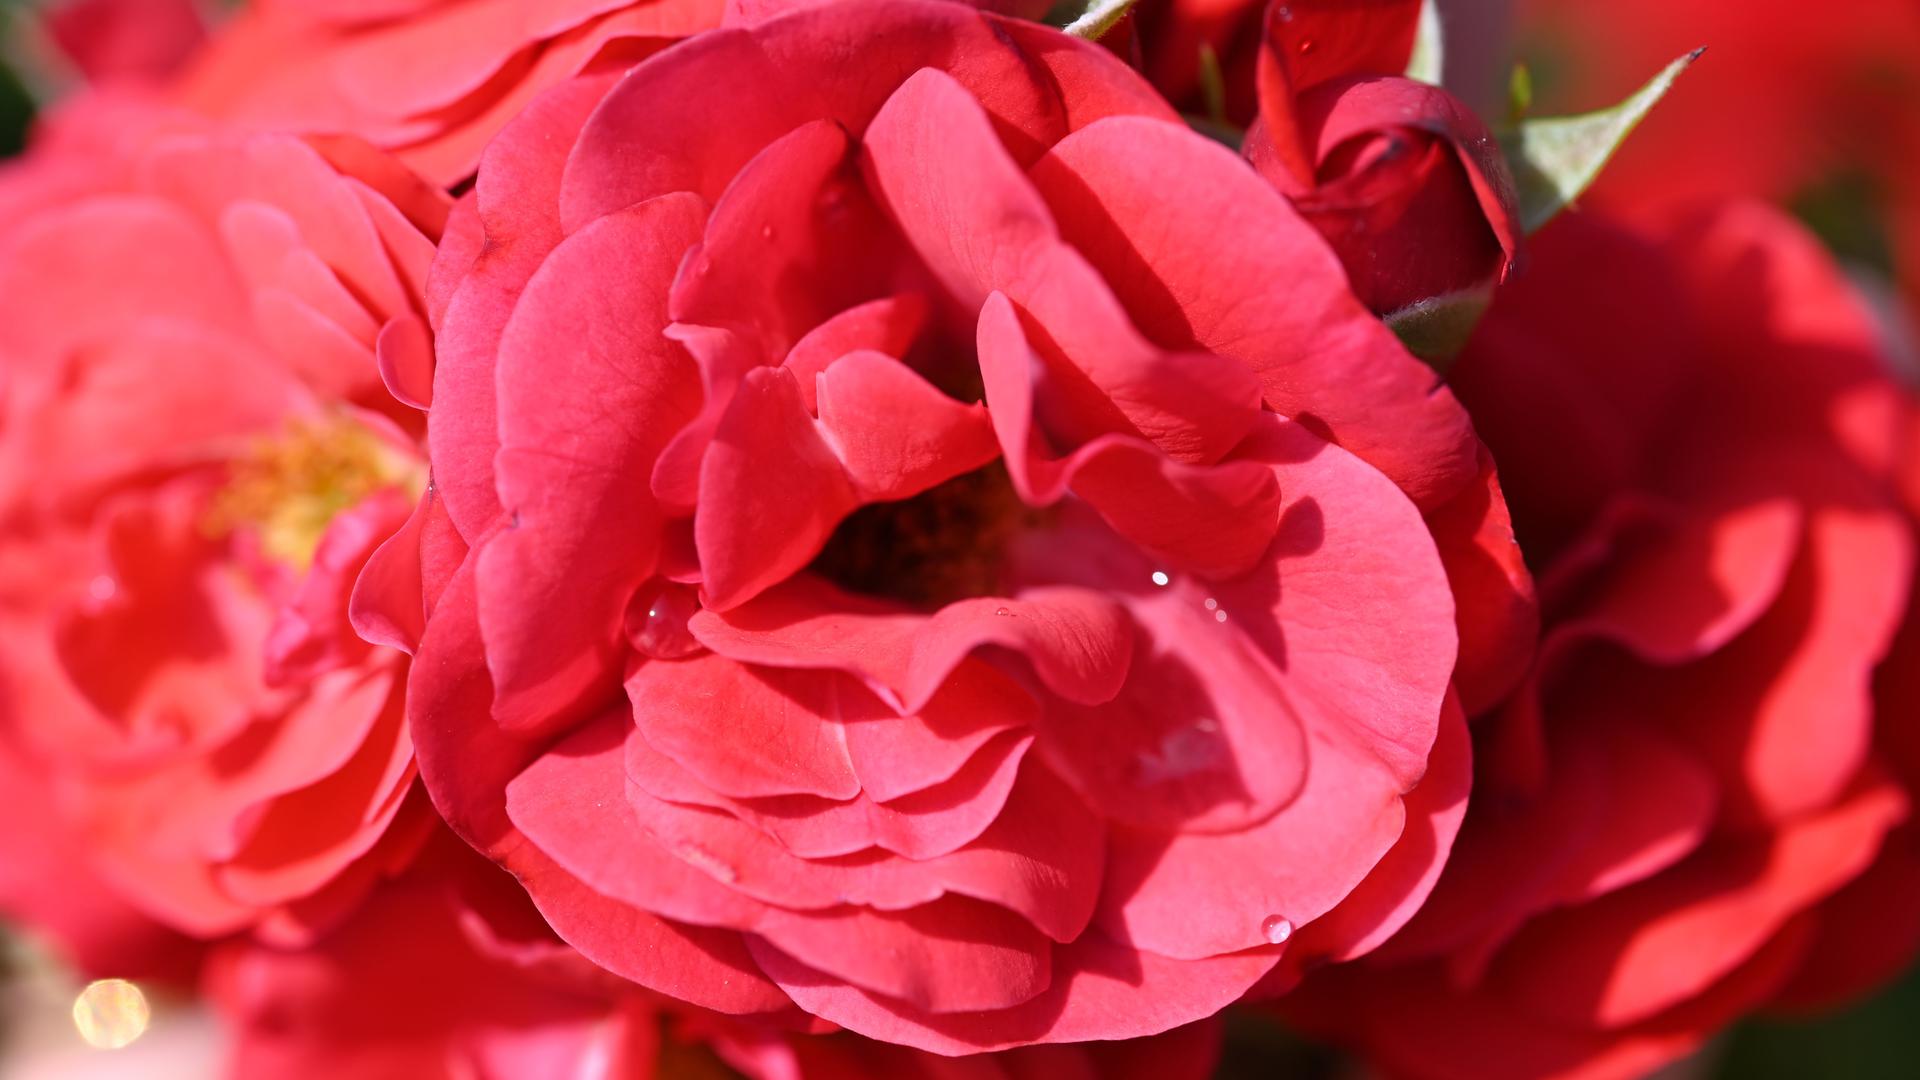 Im Rosenneuheitengarten auf dem Beutig wird die hellrot leuchtende Floribundarose „Trudy“ gezeigt. Die Rose des irischen Amateurzüchters David Kenny wird beim 70. Internationalen Rosenneuheiten-Wettbewerb mit dem Titel „Goldene Rose von Baden-Baden“ ausgezeichnet. 